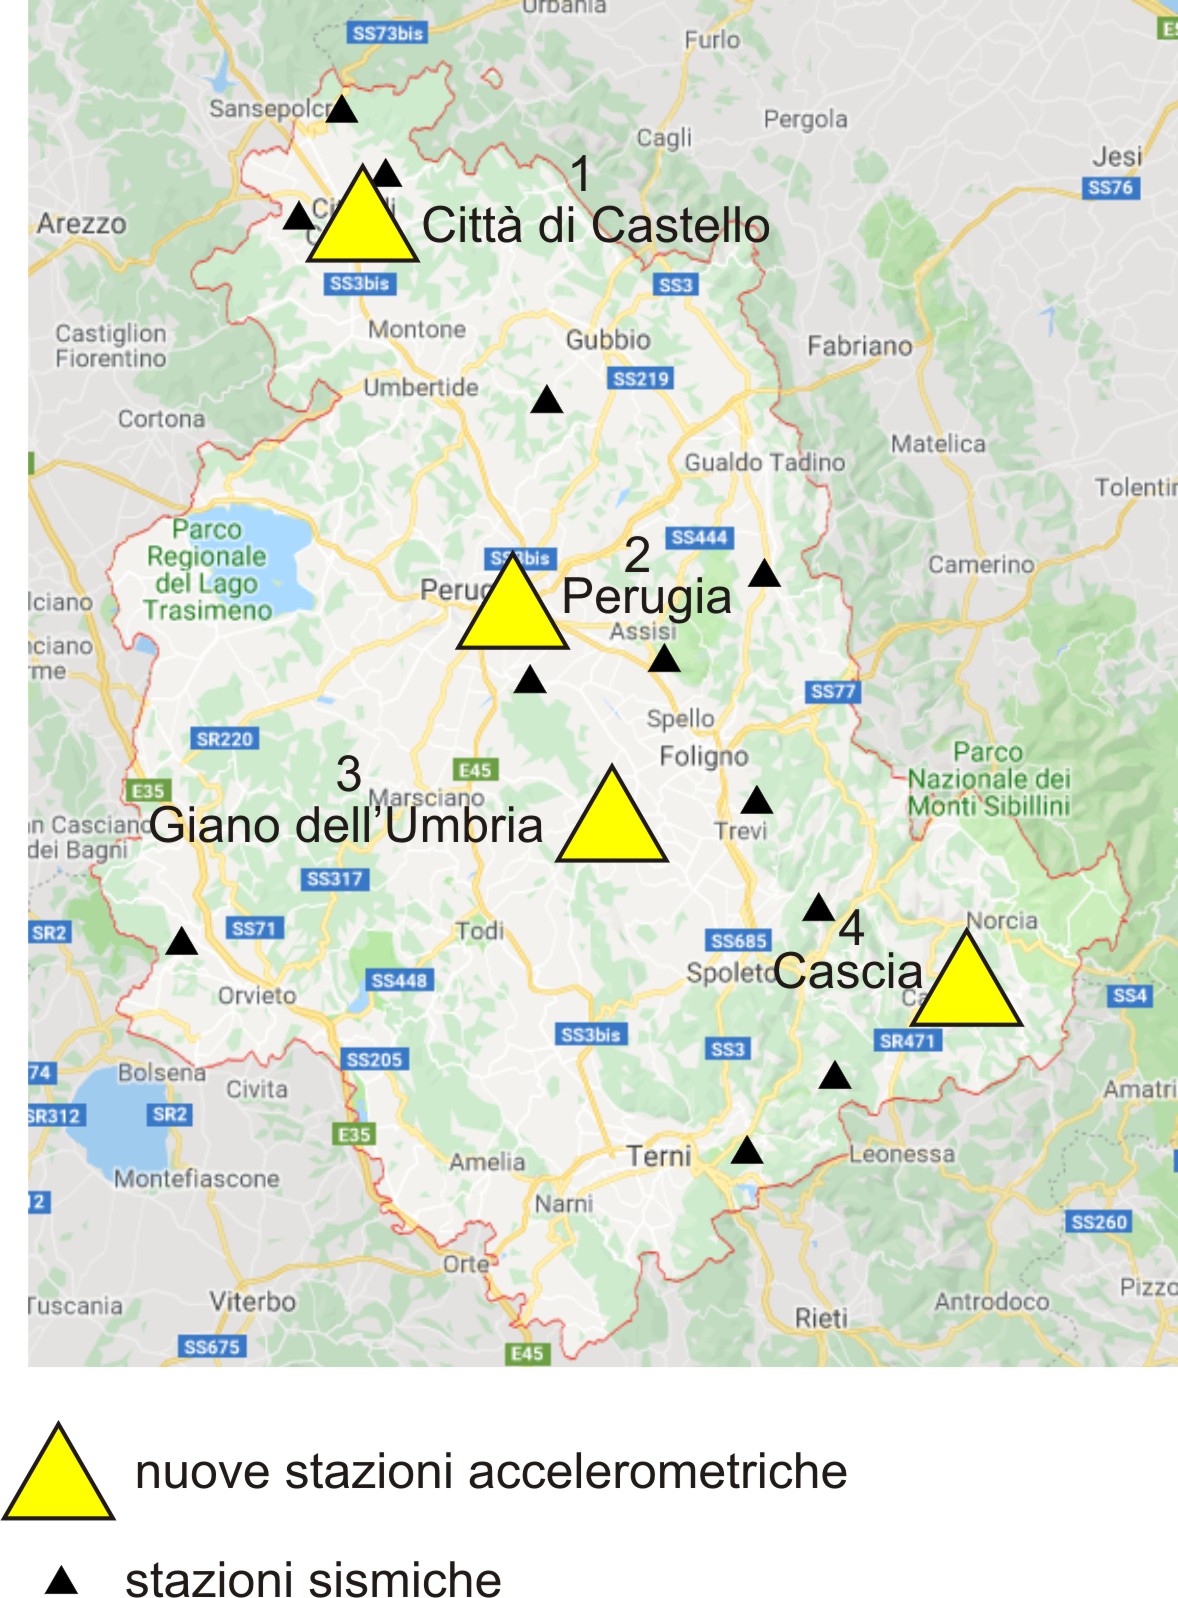 localizzazione stazioni accelerometriche e sismiche rete regionale